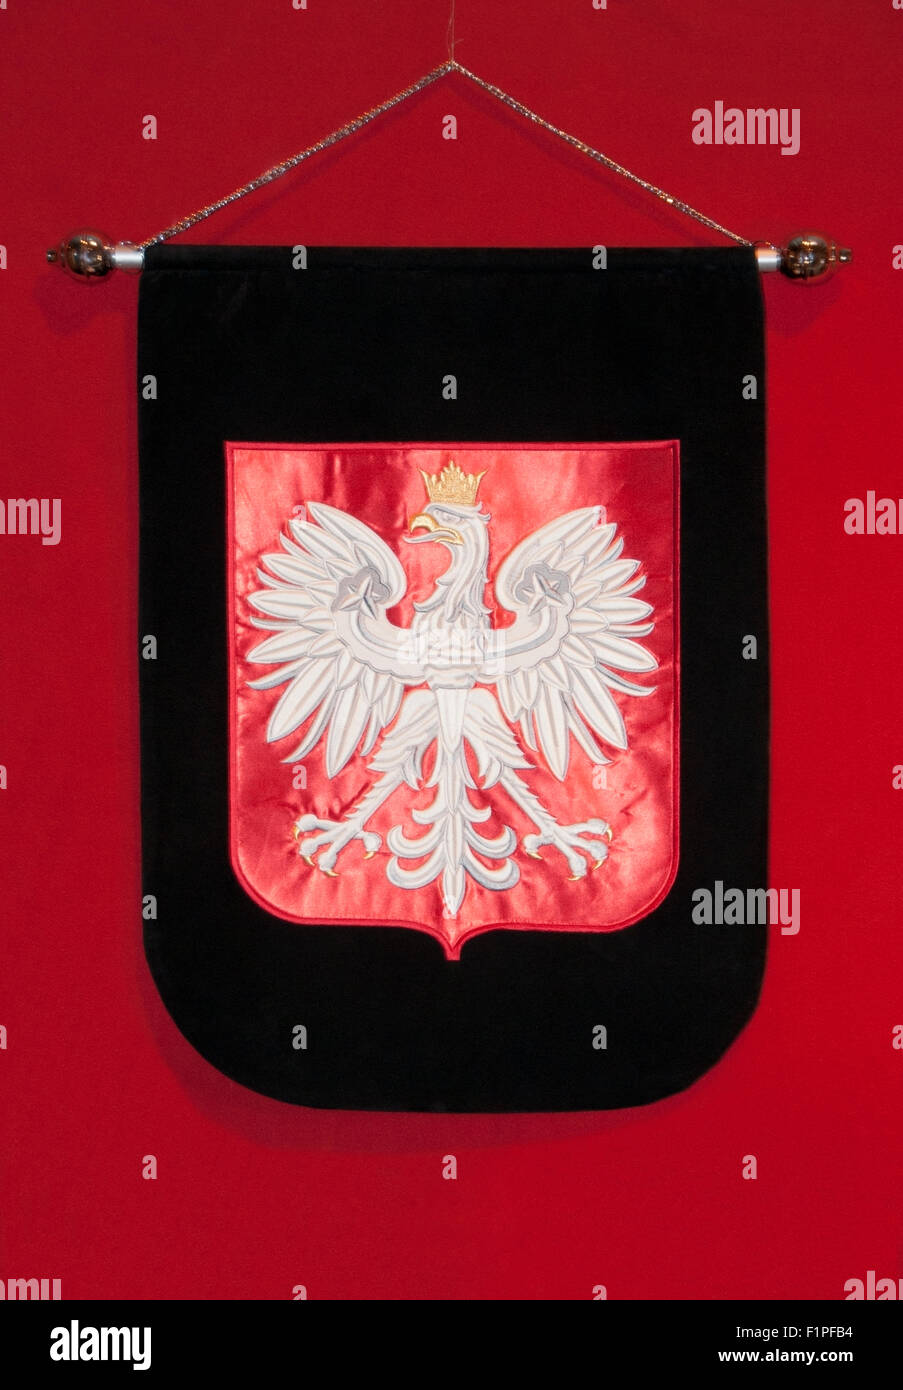 L'emblème de l'aigle polonais, avec une couronne jaune, brodé sur un tissu de velours rouge, sur fond rouge et noir, Polska, polonaise, PL Banque D'Images